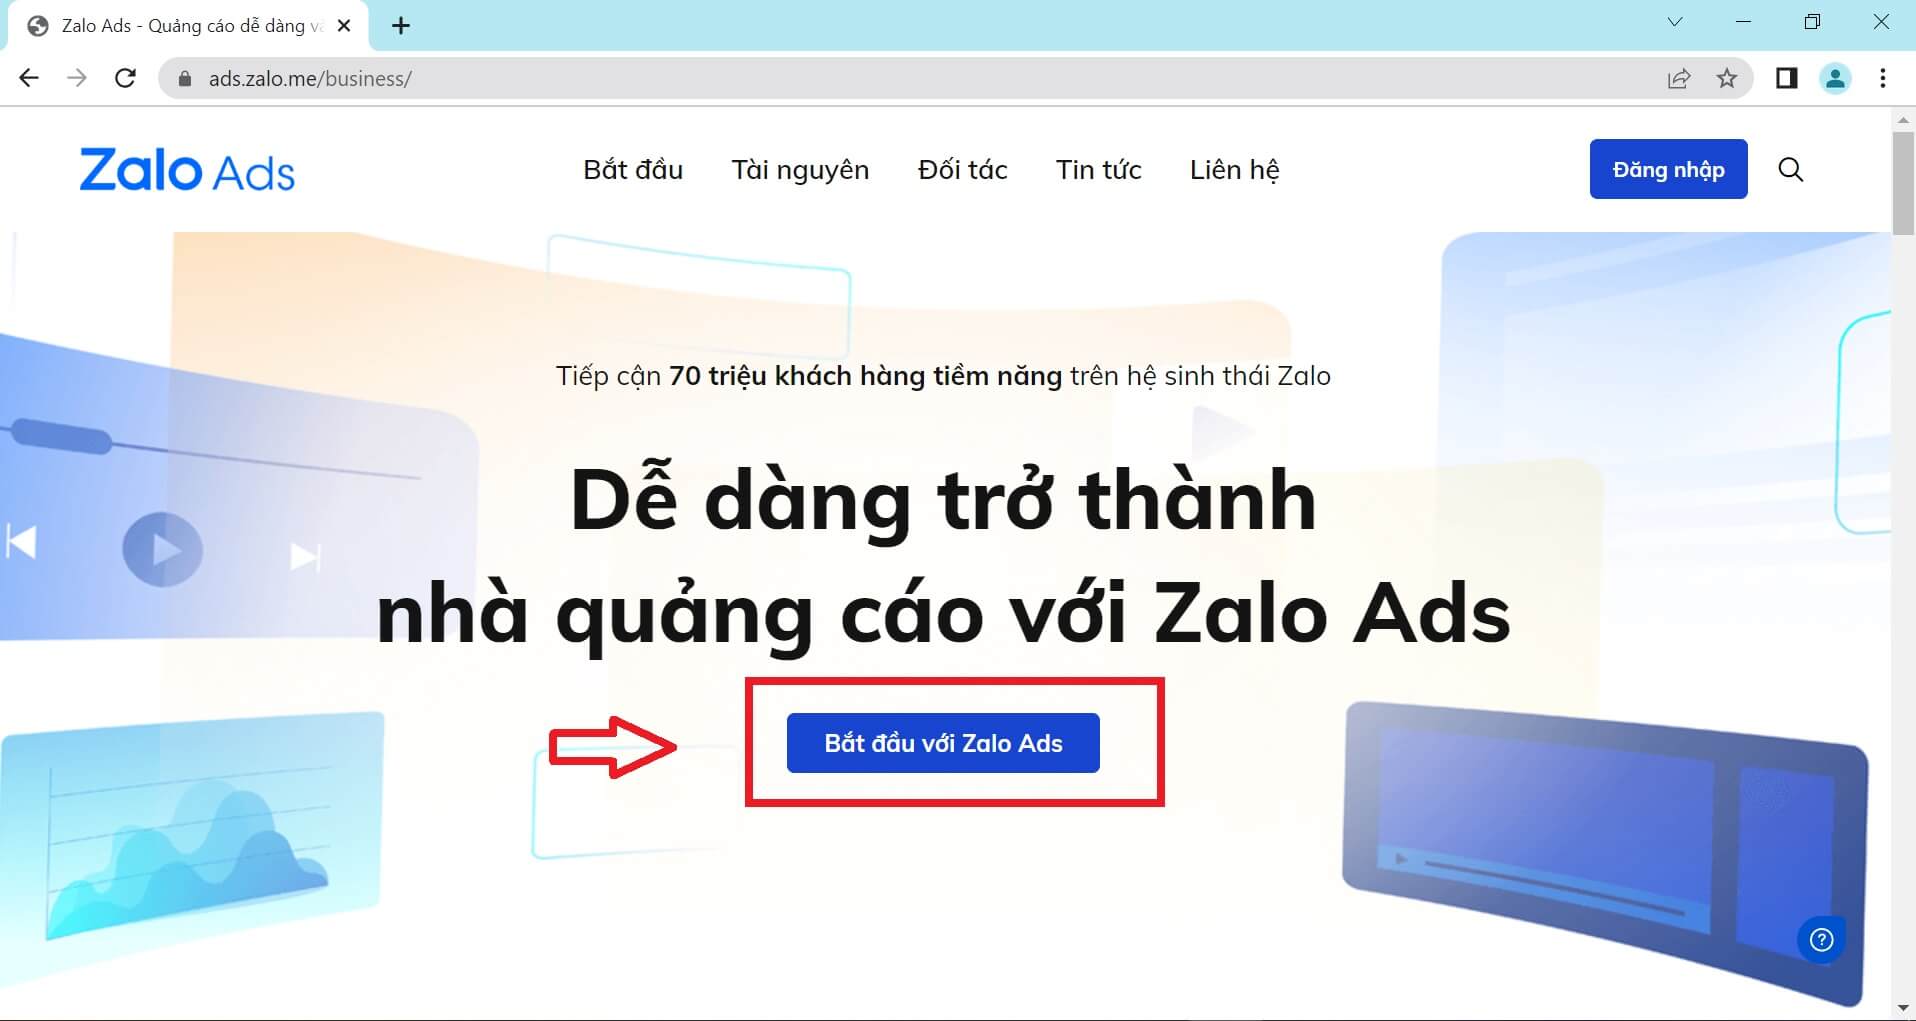 Trang đăng nhập quảng cáo Zalo